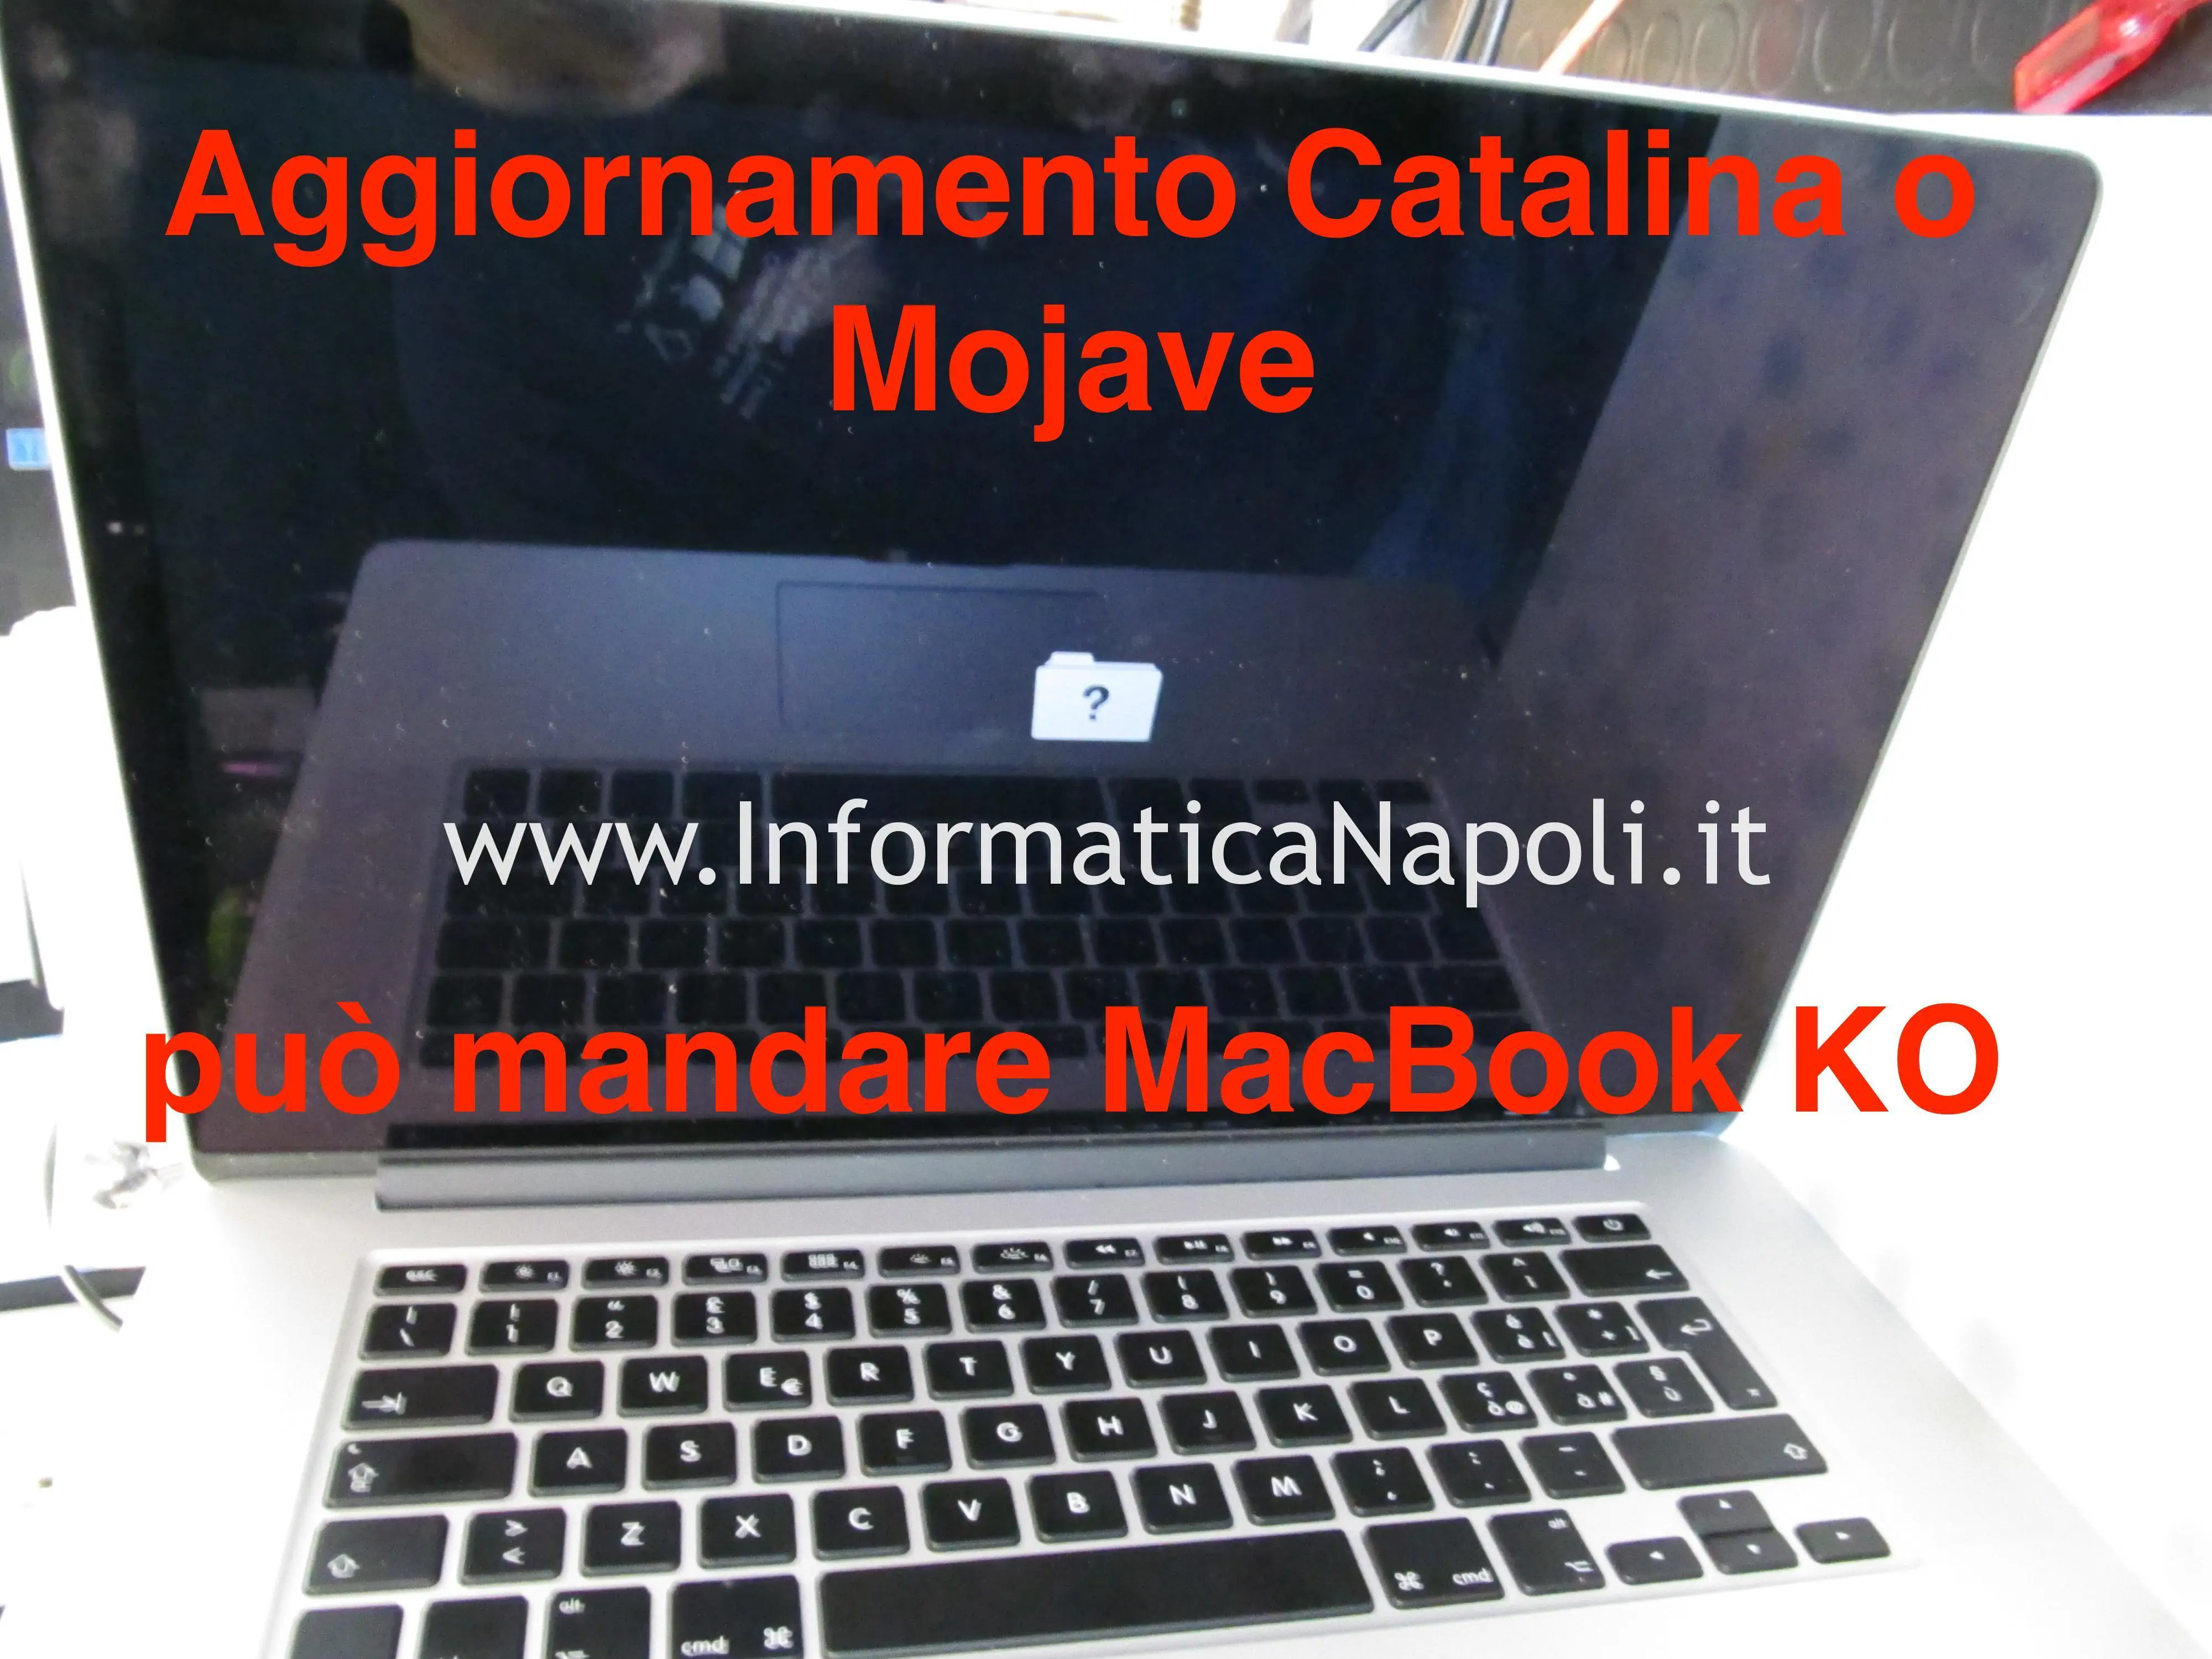 macbook pro 15 A1398 con problemi di aggiornamento mojave catalina funzionante riparato